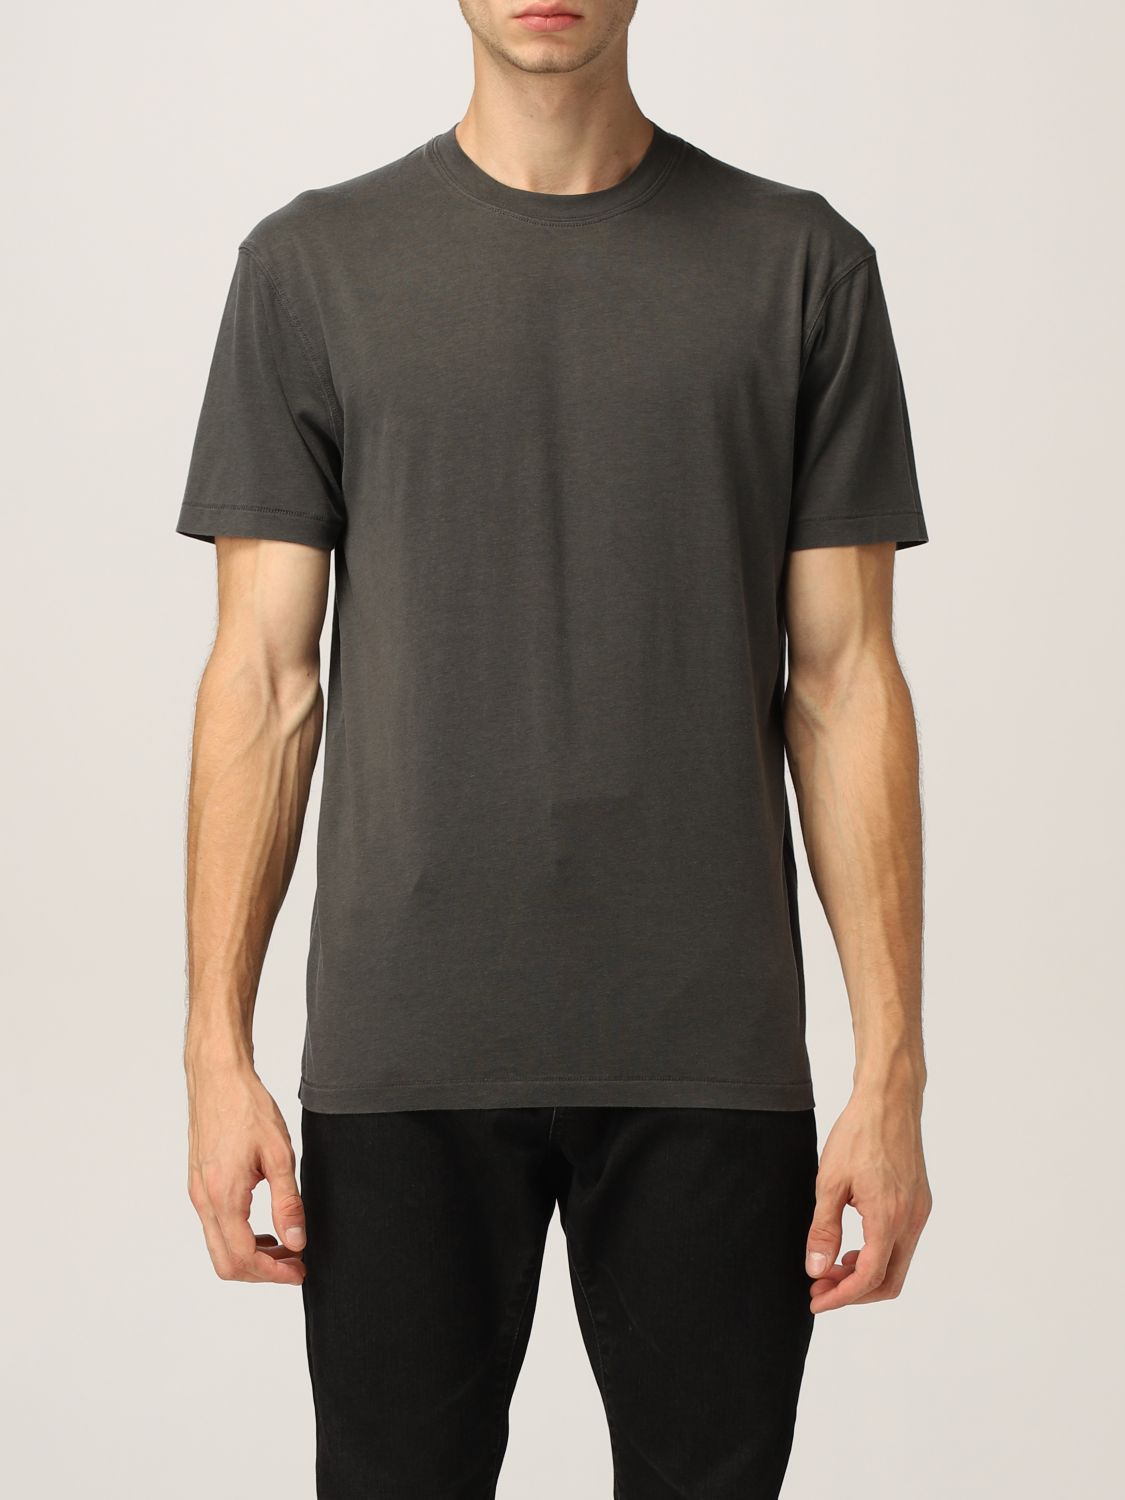 TOM FORD: t-shirt for man - Kaki | Tom Ford t-shirt TFJ950BY229 online ...